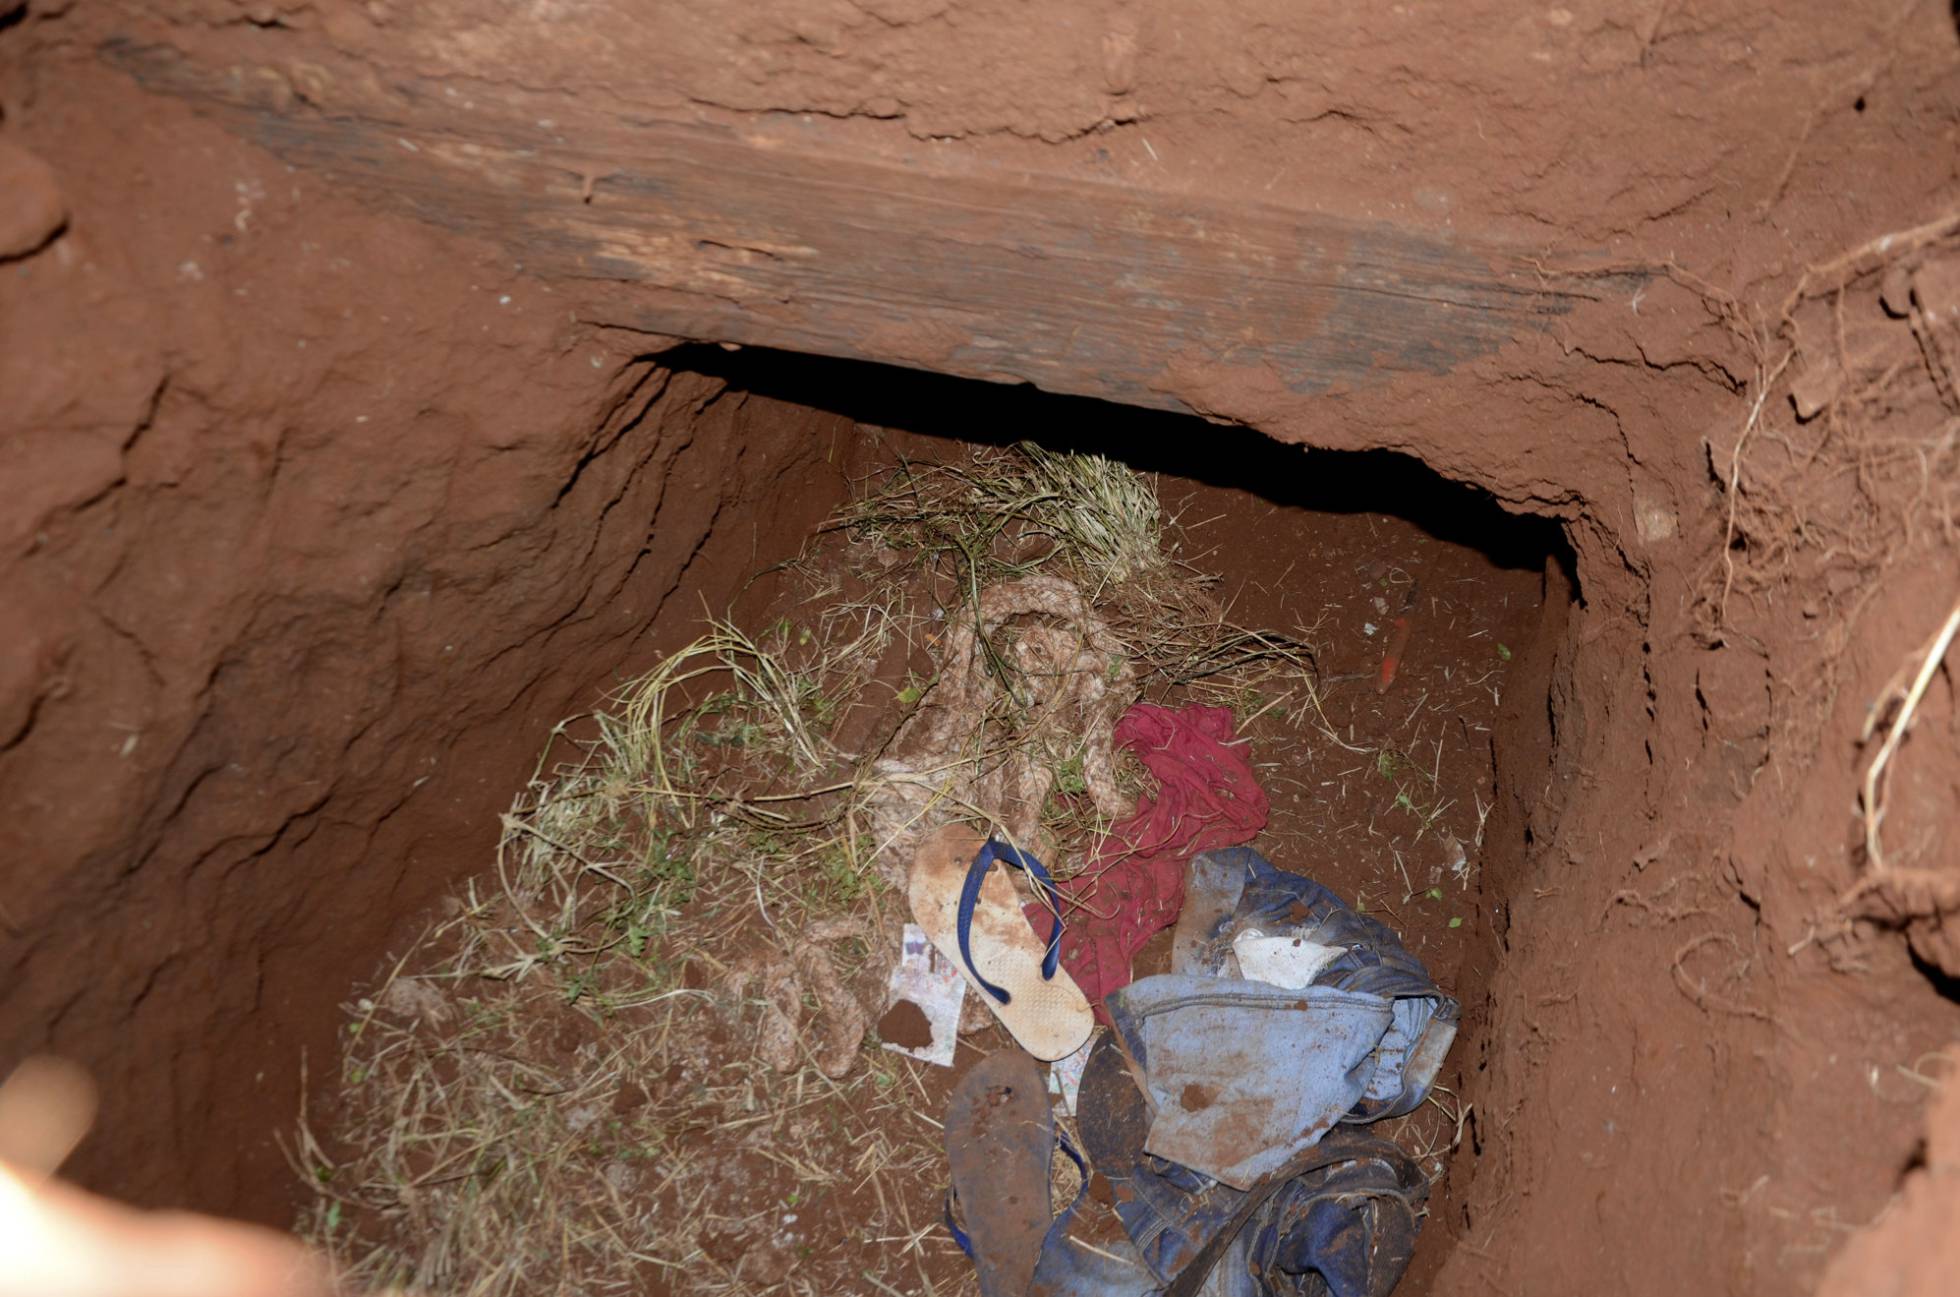 Túnel habría sido “maquillaje”, según ministra de Justicia